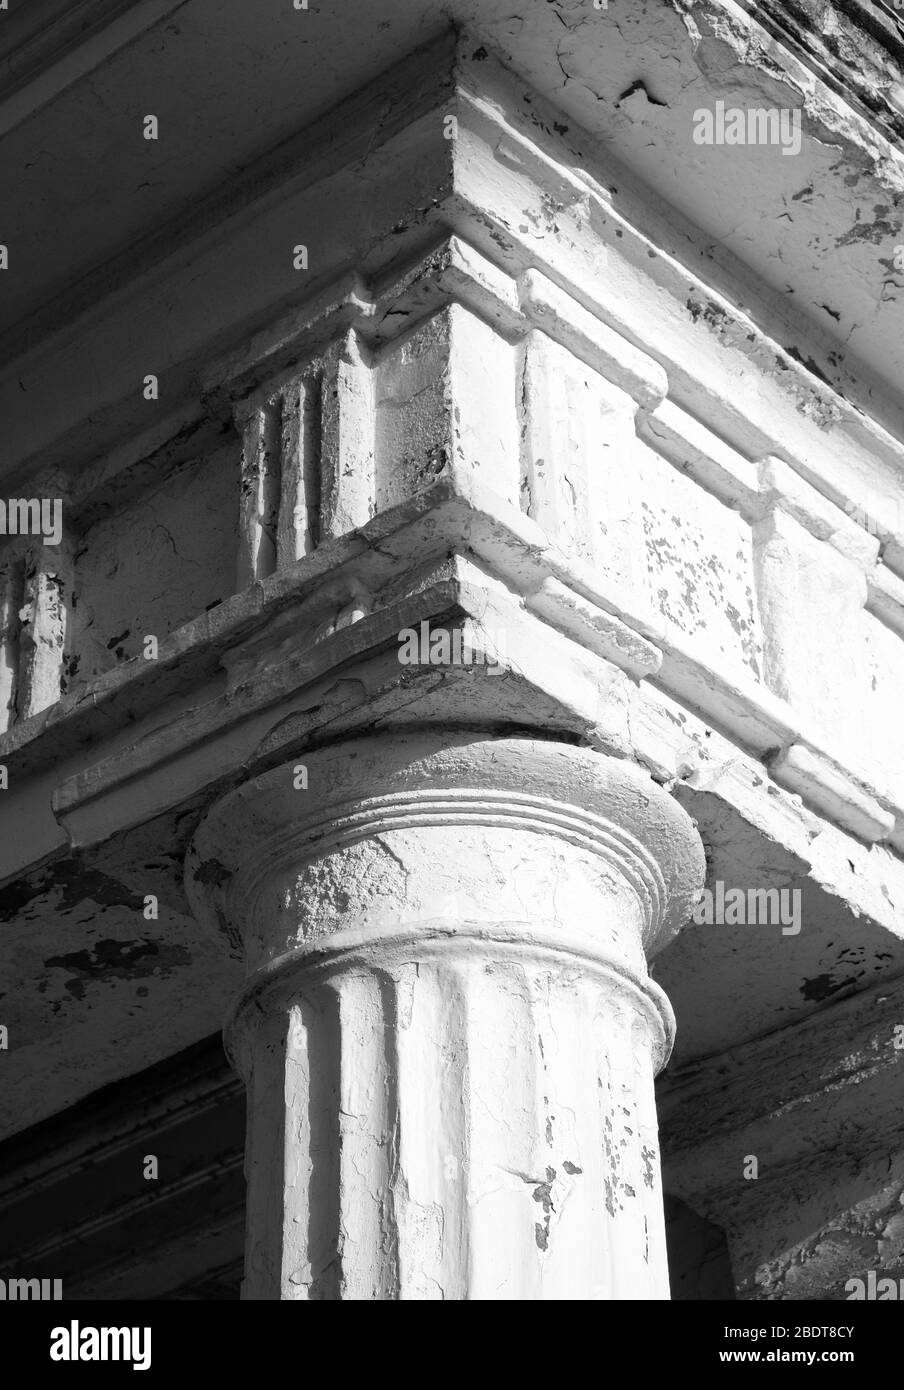 Dorische Säulen und Fries eines klassischen Gebäudes, schwarz-weiß fotografiert Stockfoto